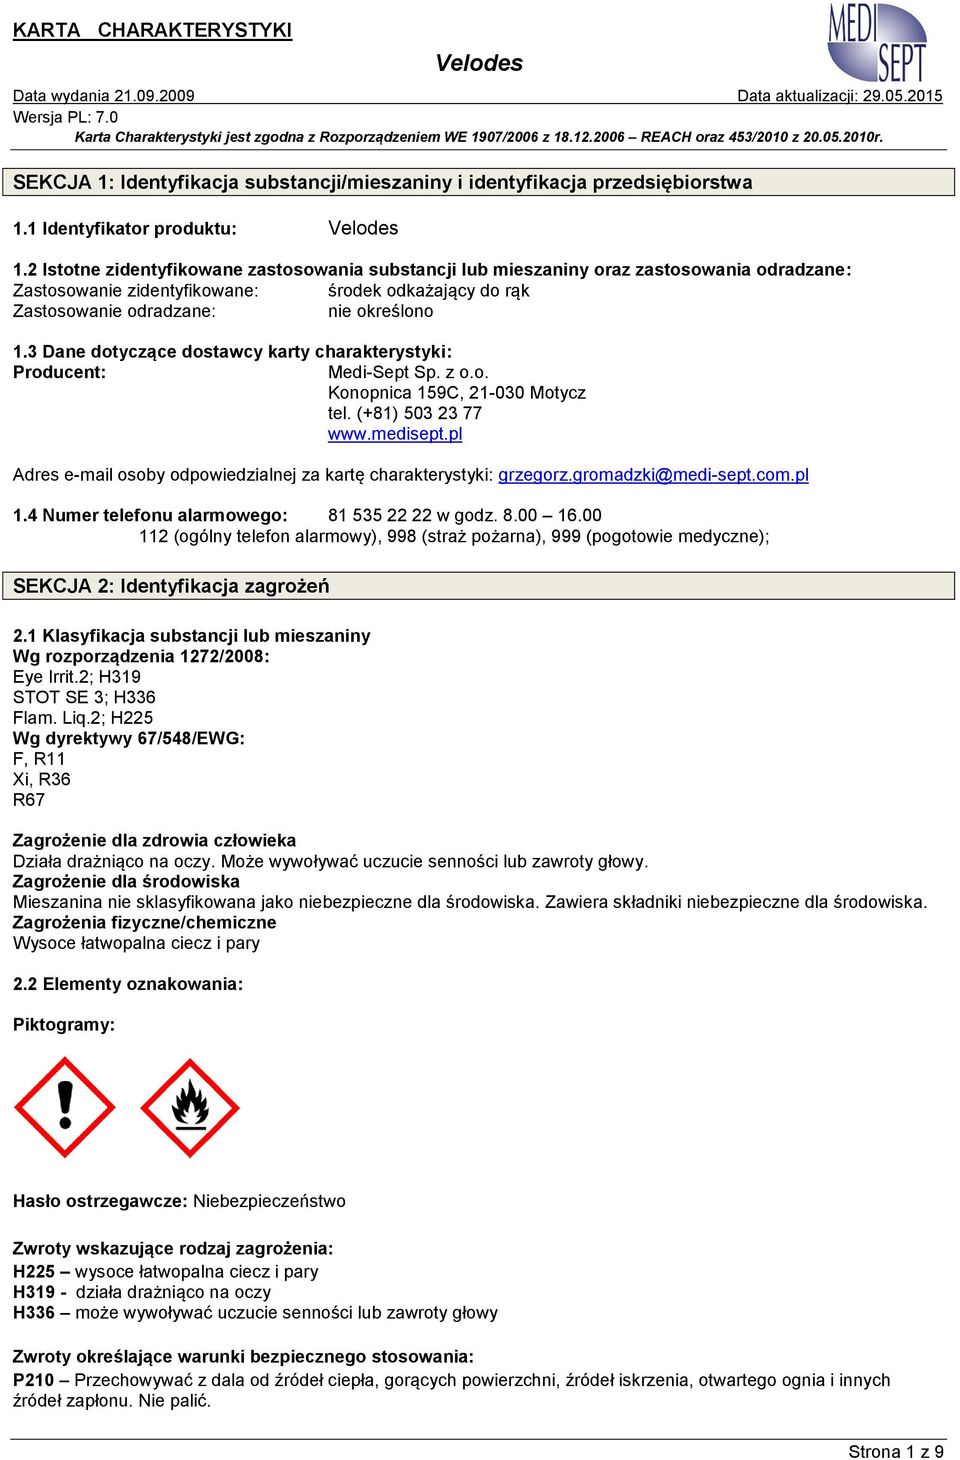 3 Dane dotyczące dostawcy karty charakterystyki: Producent: Medi-Sept Sp. z o.o. Konopnica 159C, 21-030 Motycz tel. (+81) 503 23 77 www.medisept.